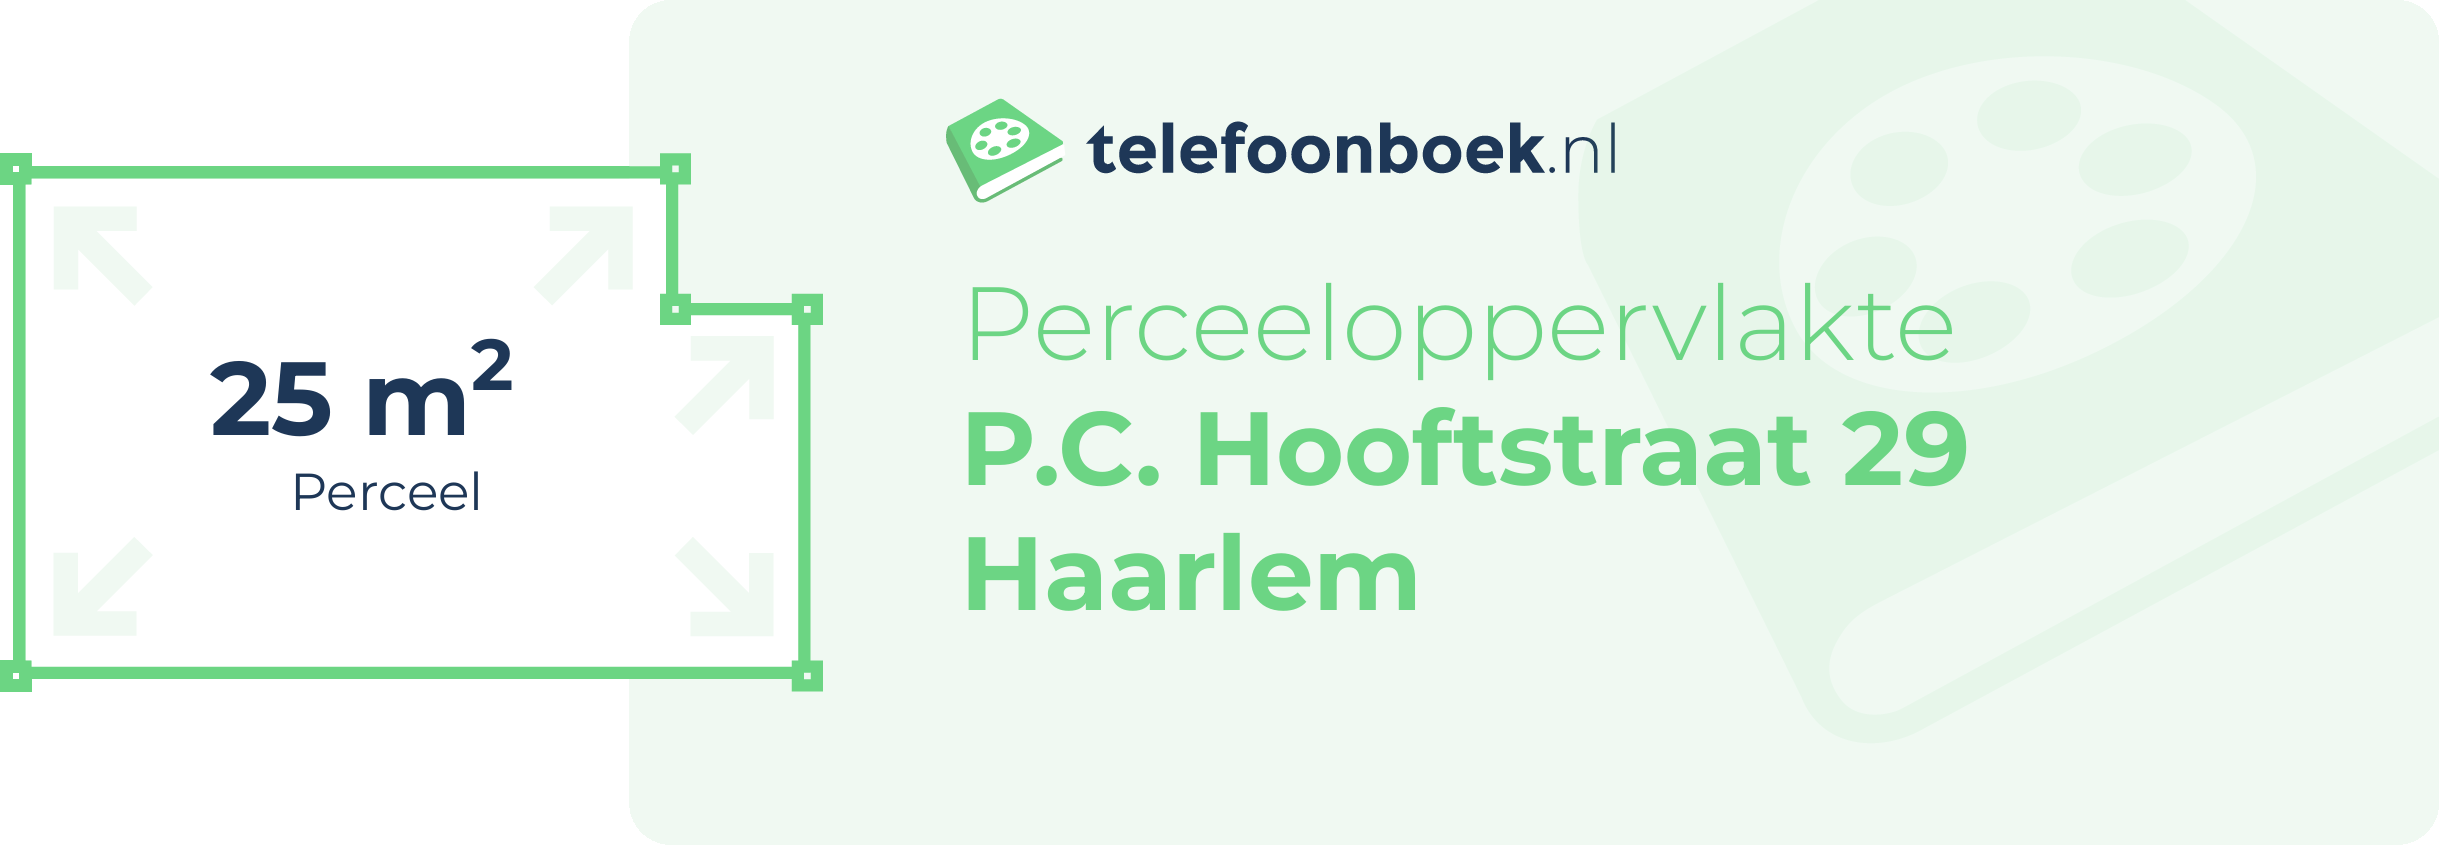 Perceeloppervlakte P.C. Hooftstraat 29 Haarlem